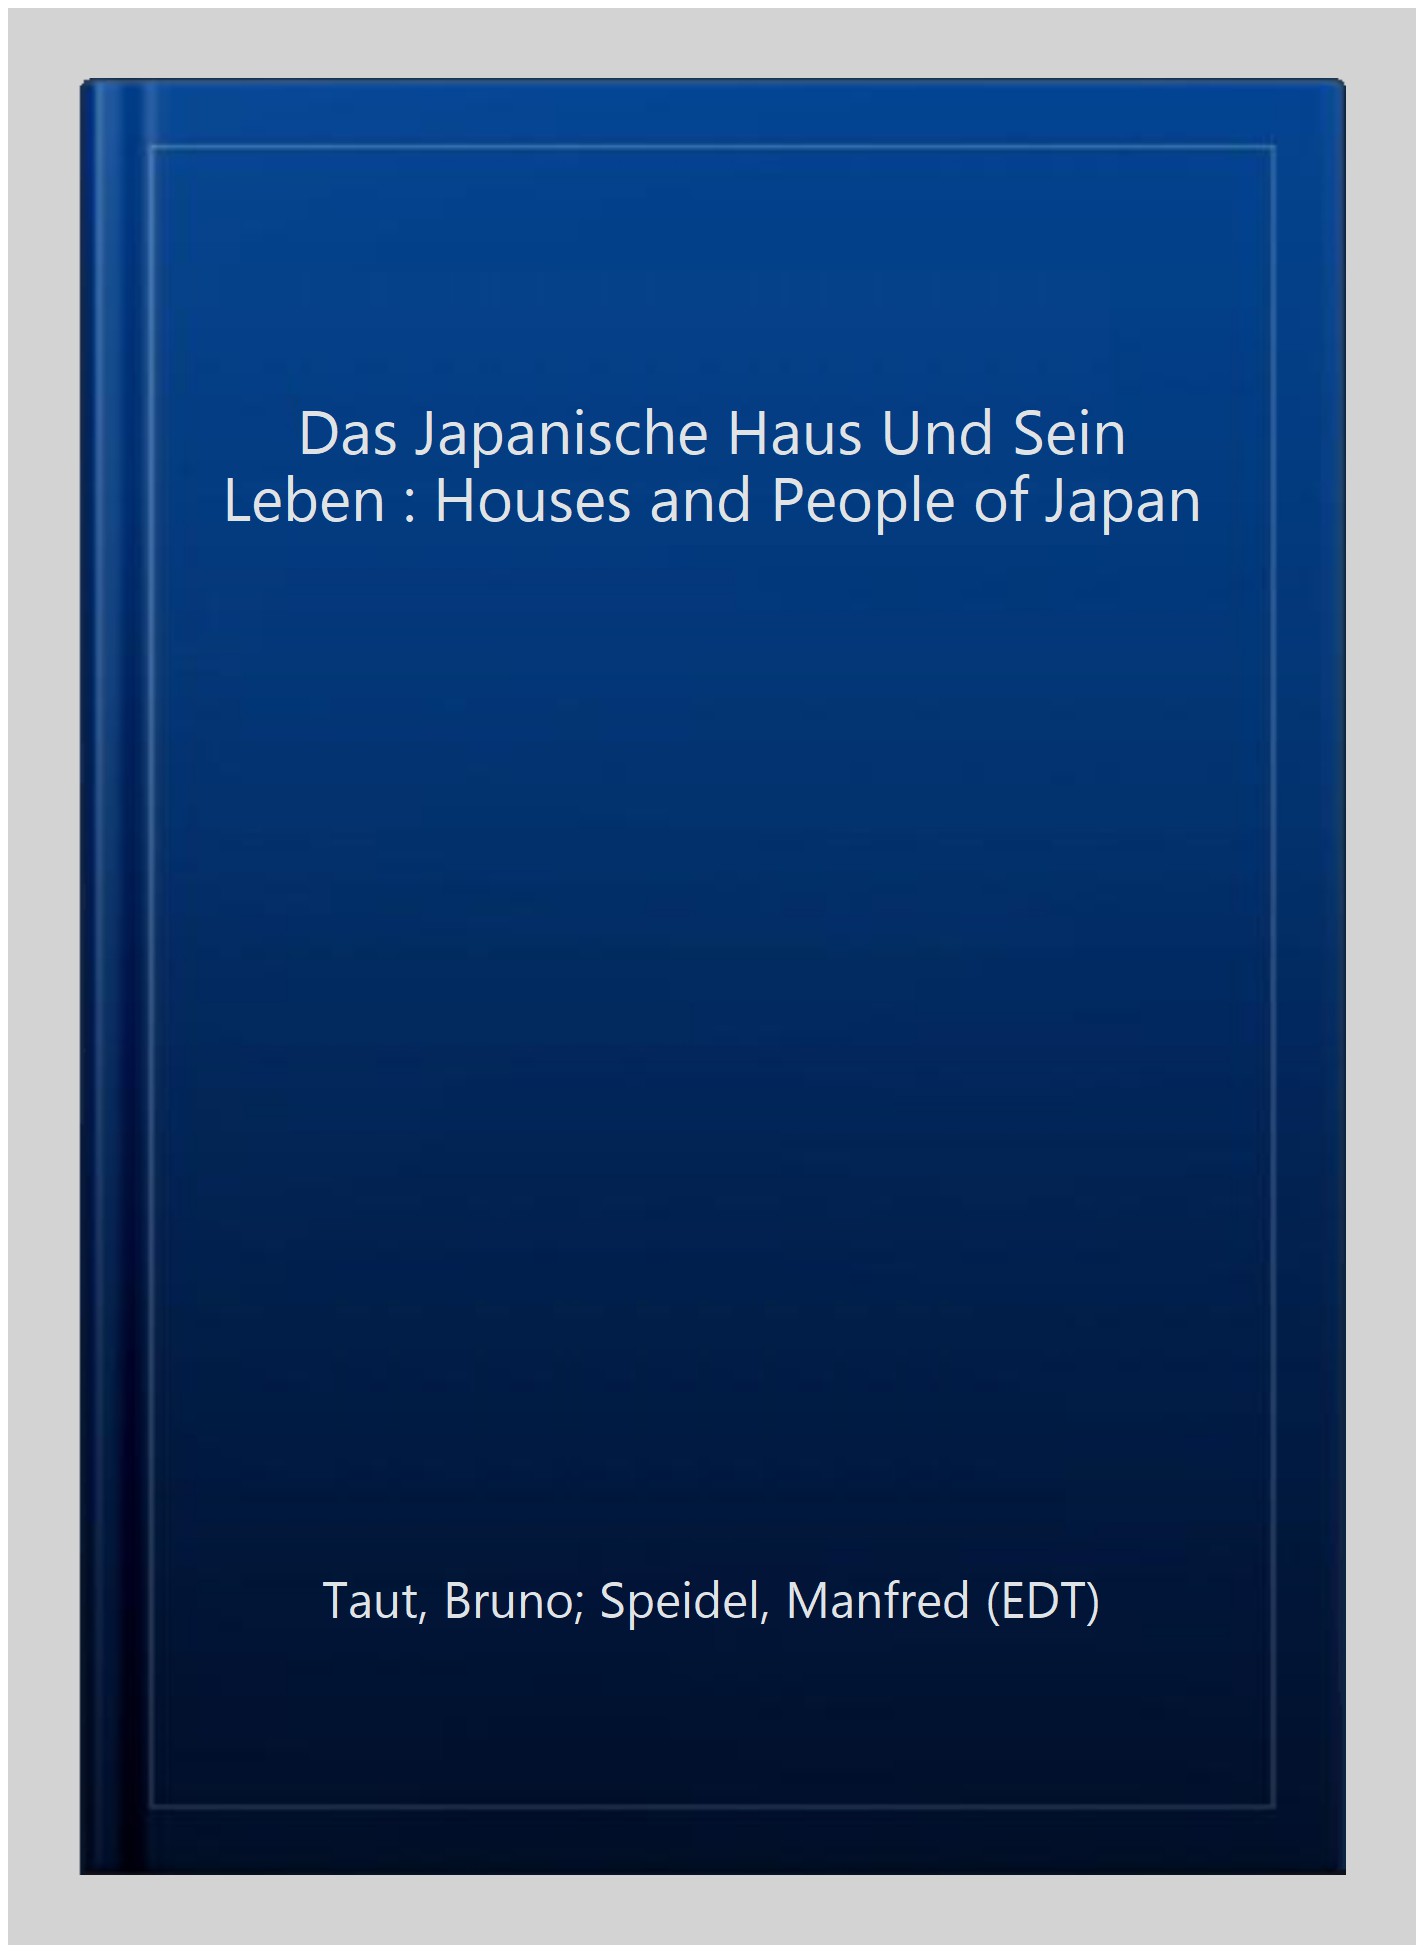 Das Japanische Haus Und Sein Leben : Houses and People of Japan -Language: german - Taut, Bruno; Speidel, Manfred (EDT)